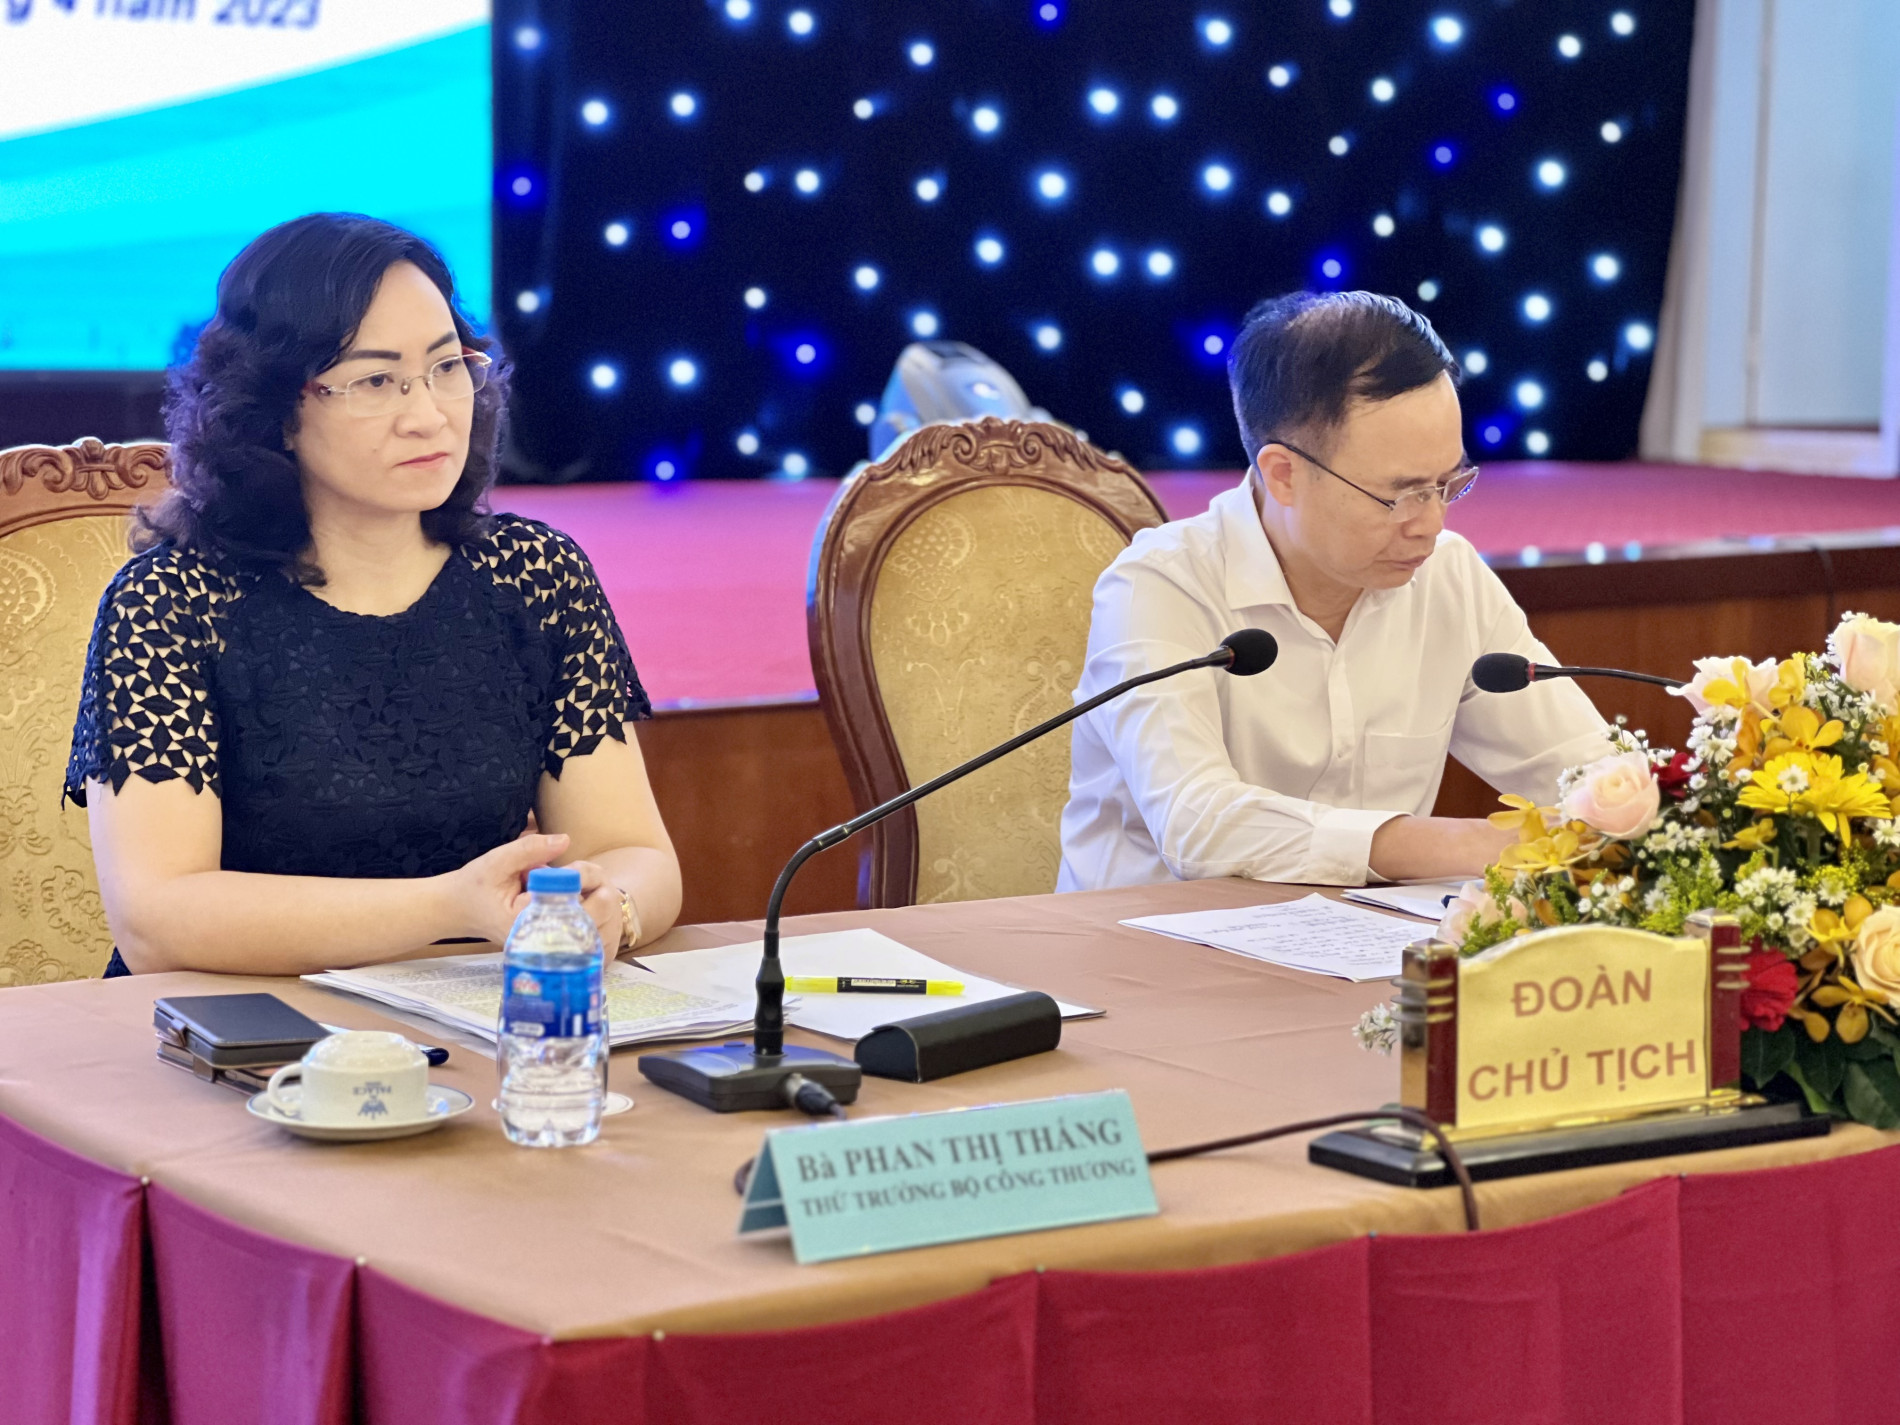 Bà Phan Thị Thắng, Thứ trưởng Bộ Công thương tham dự và chủ trì hội nghị.